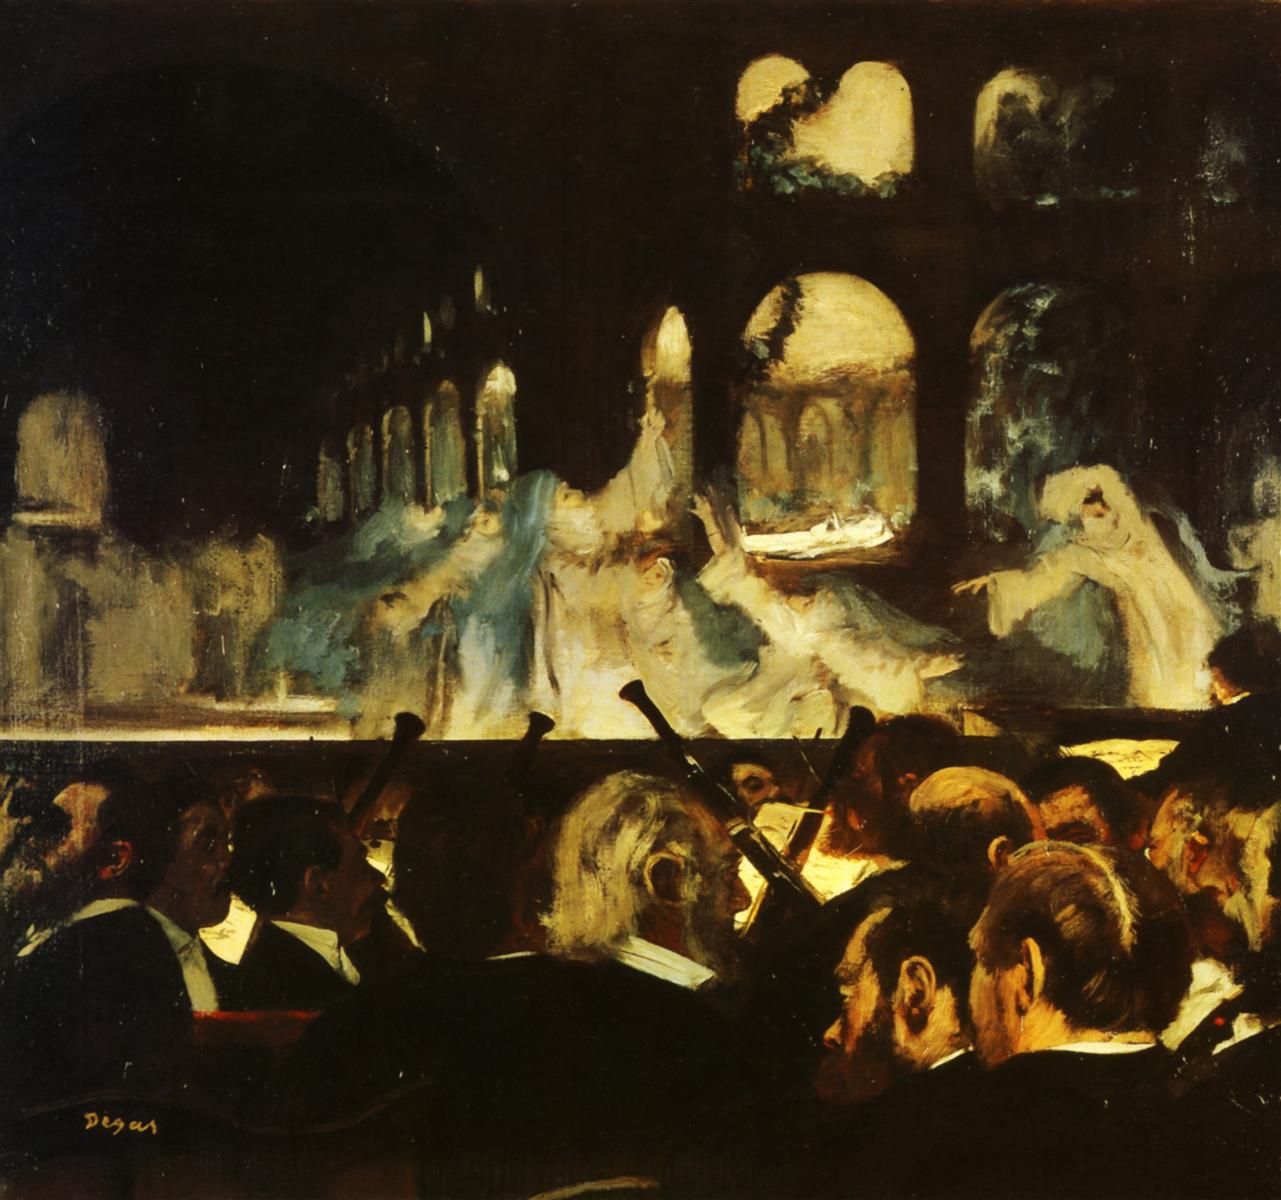 Edgar+Degas-1834-1917 (318).jpg